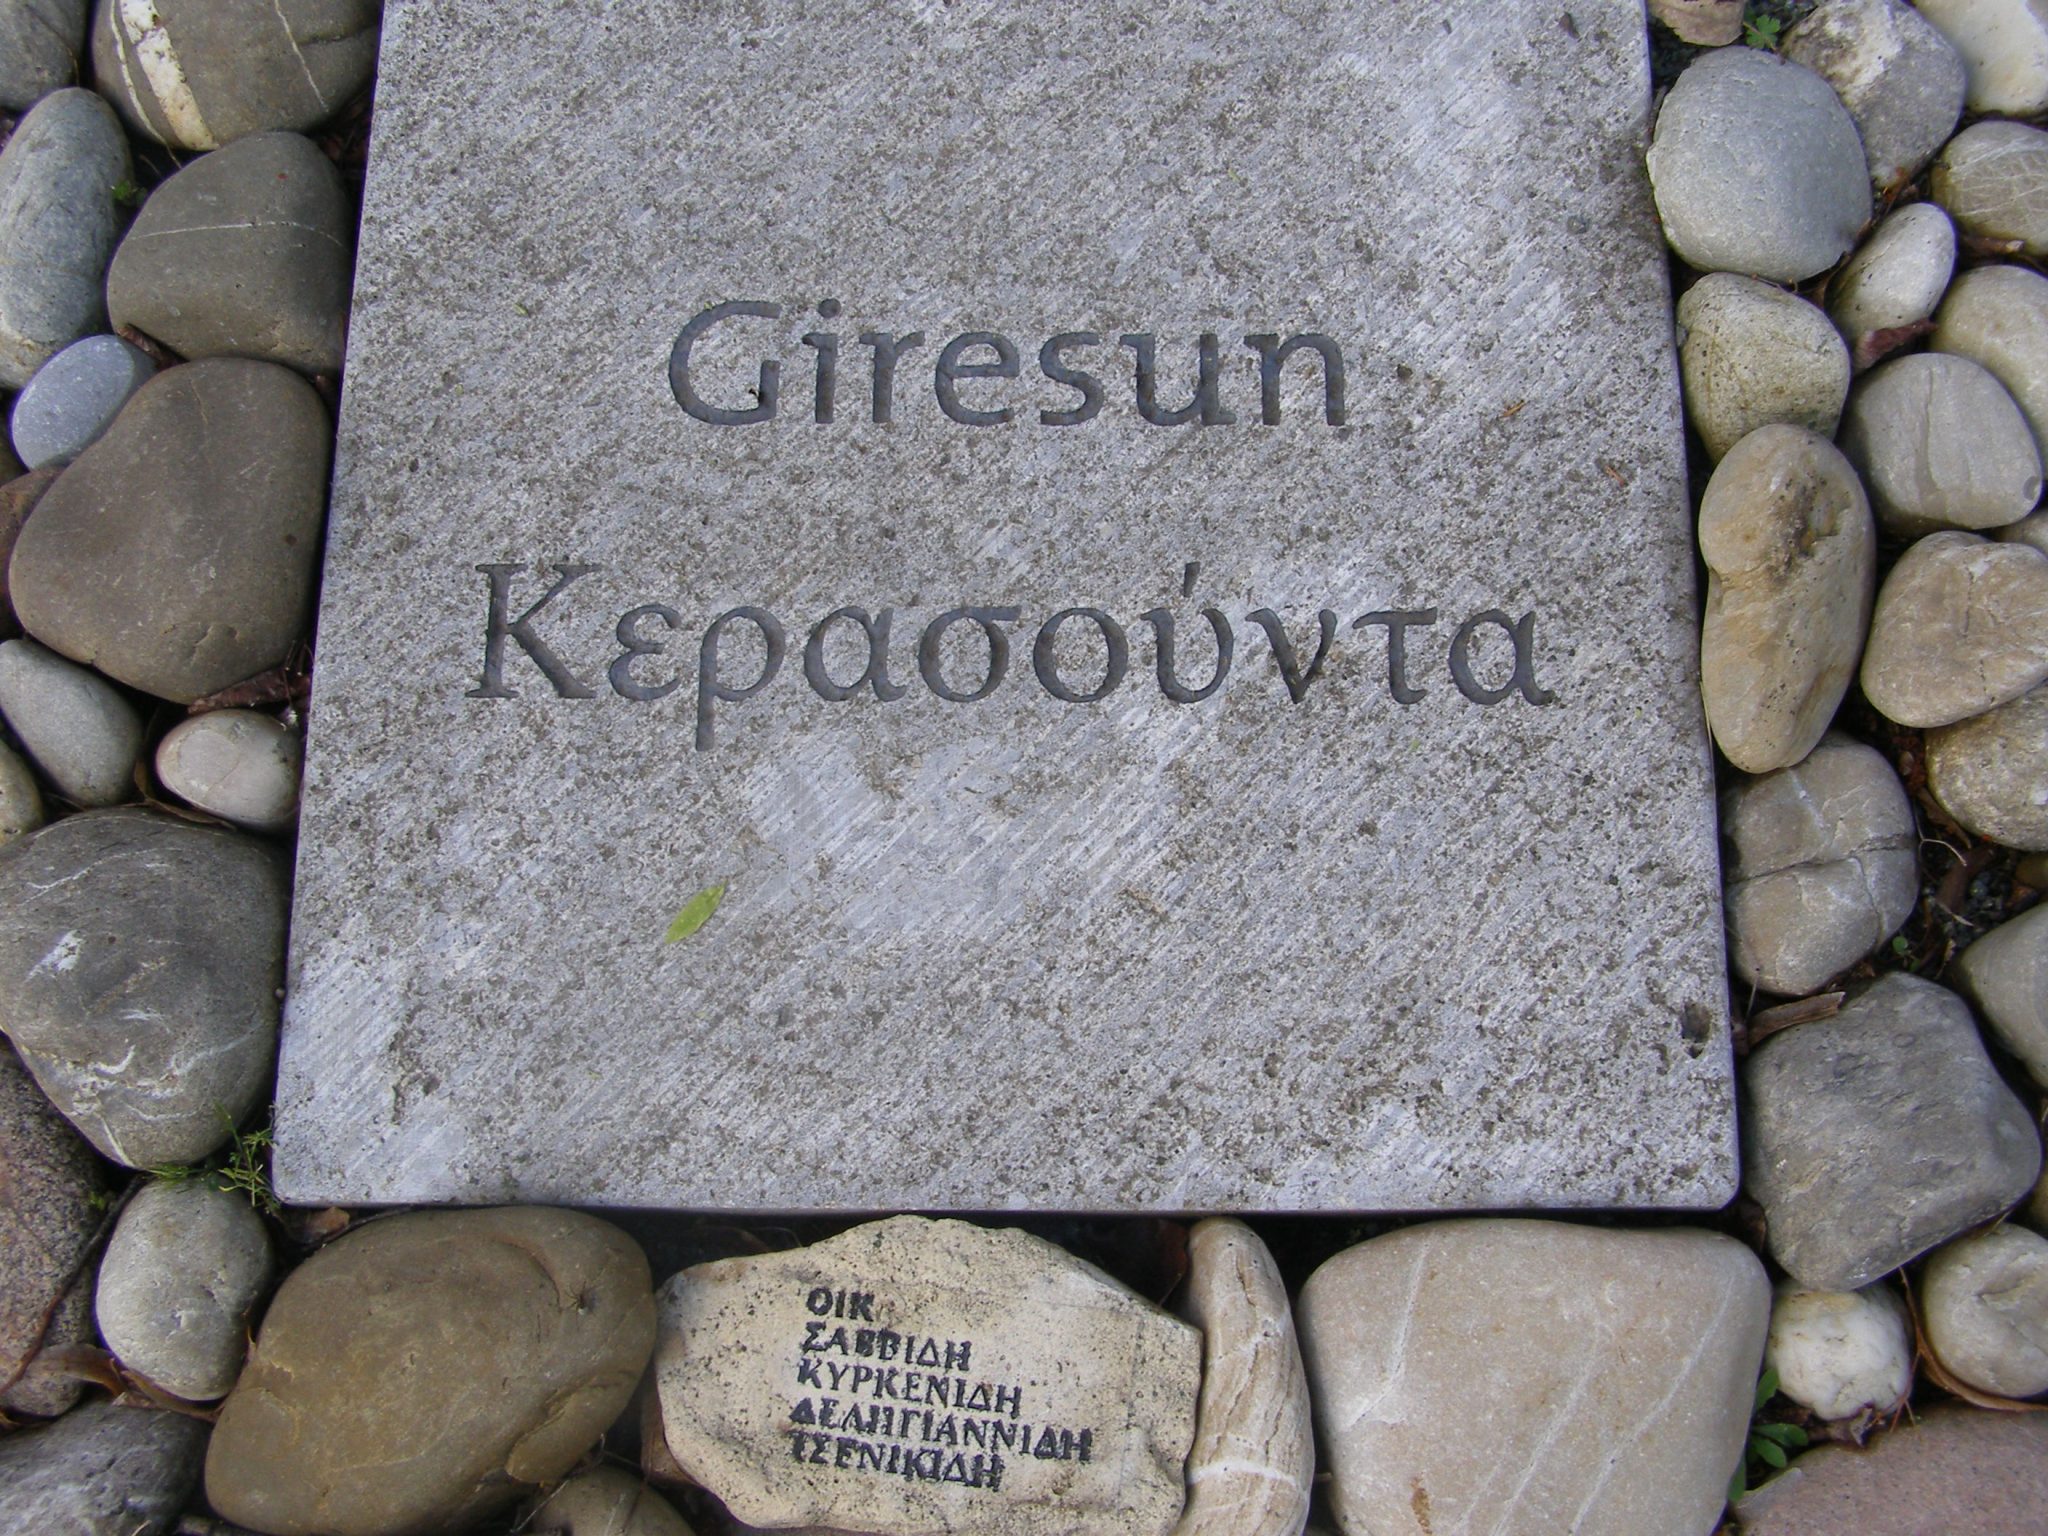 Ecumenical Genocide Memorial_Berlin_Commemorative Plate_Giresun